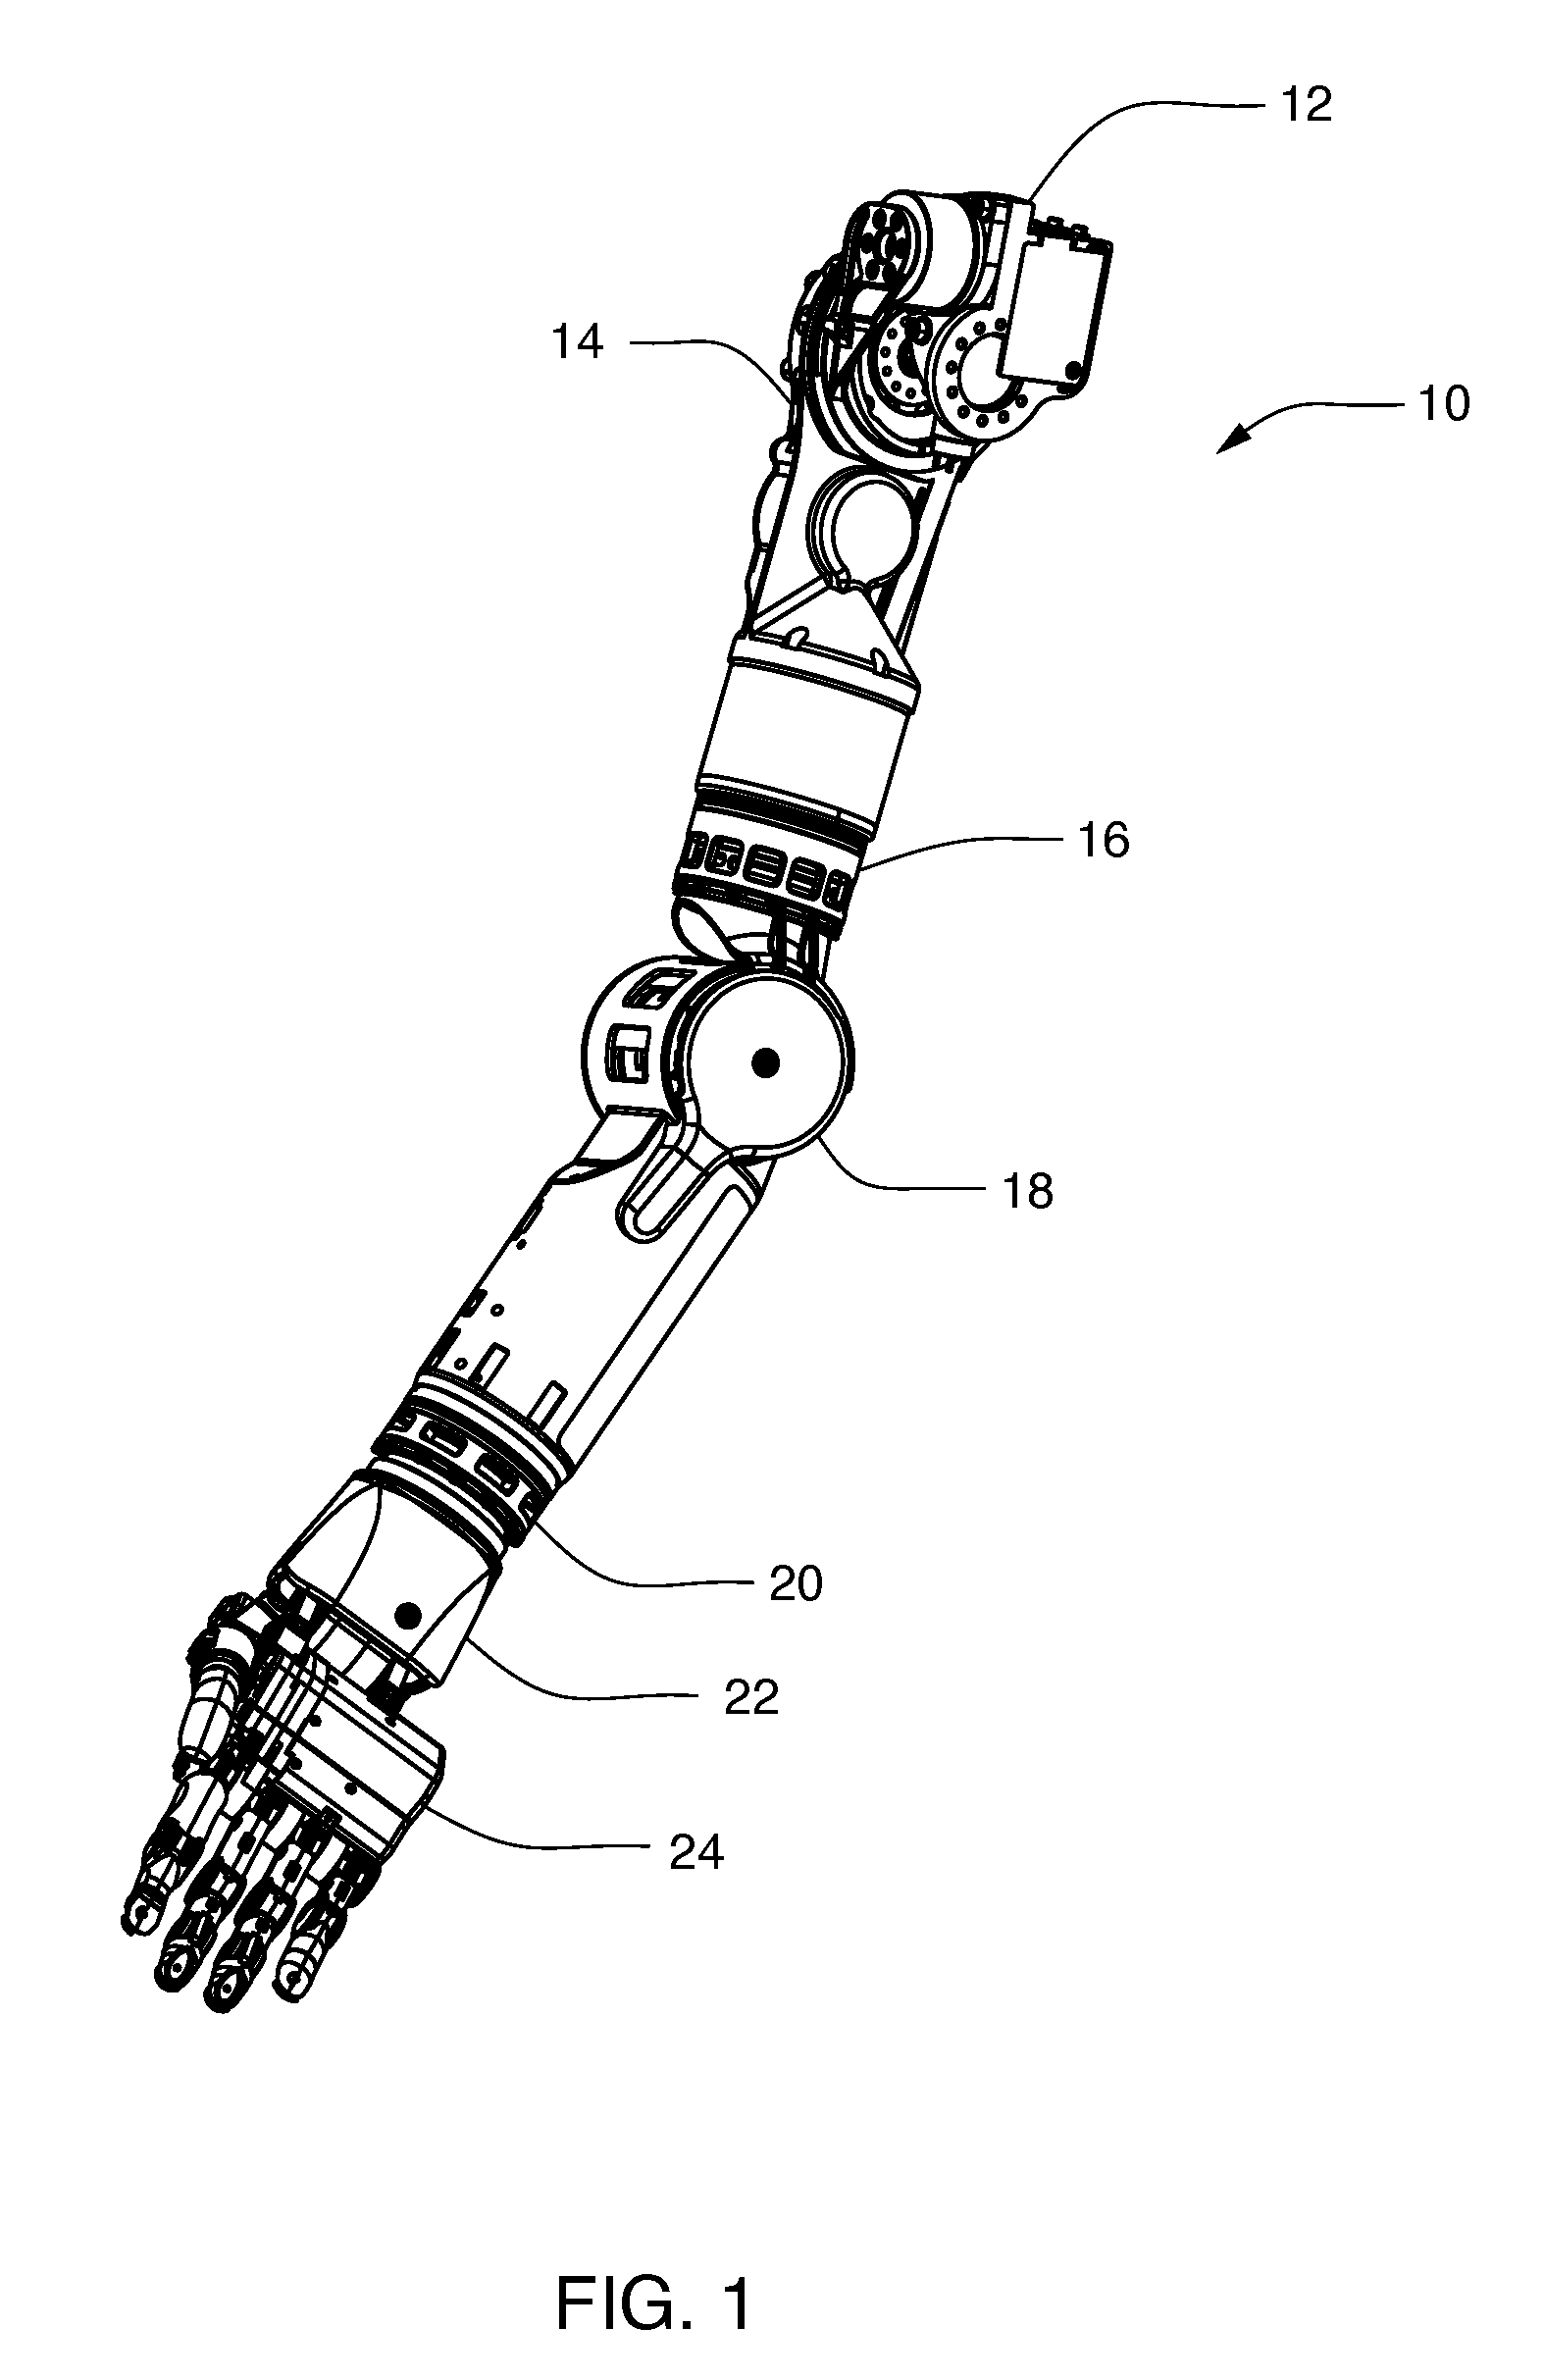 Arm prosthetic device